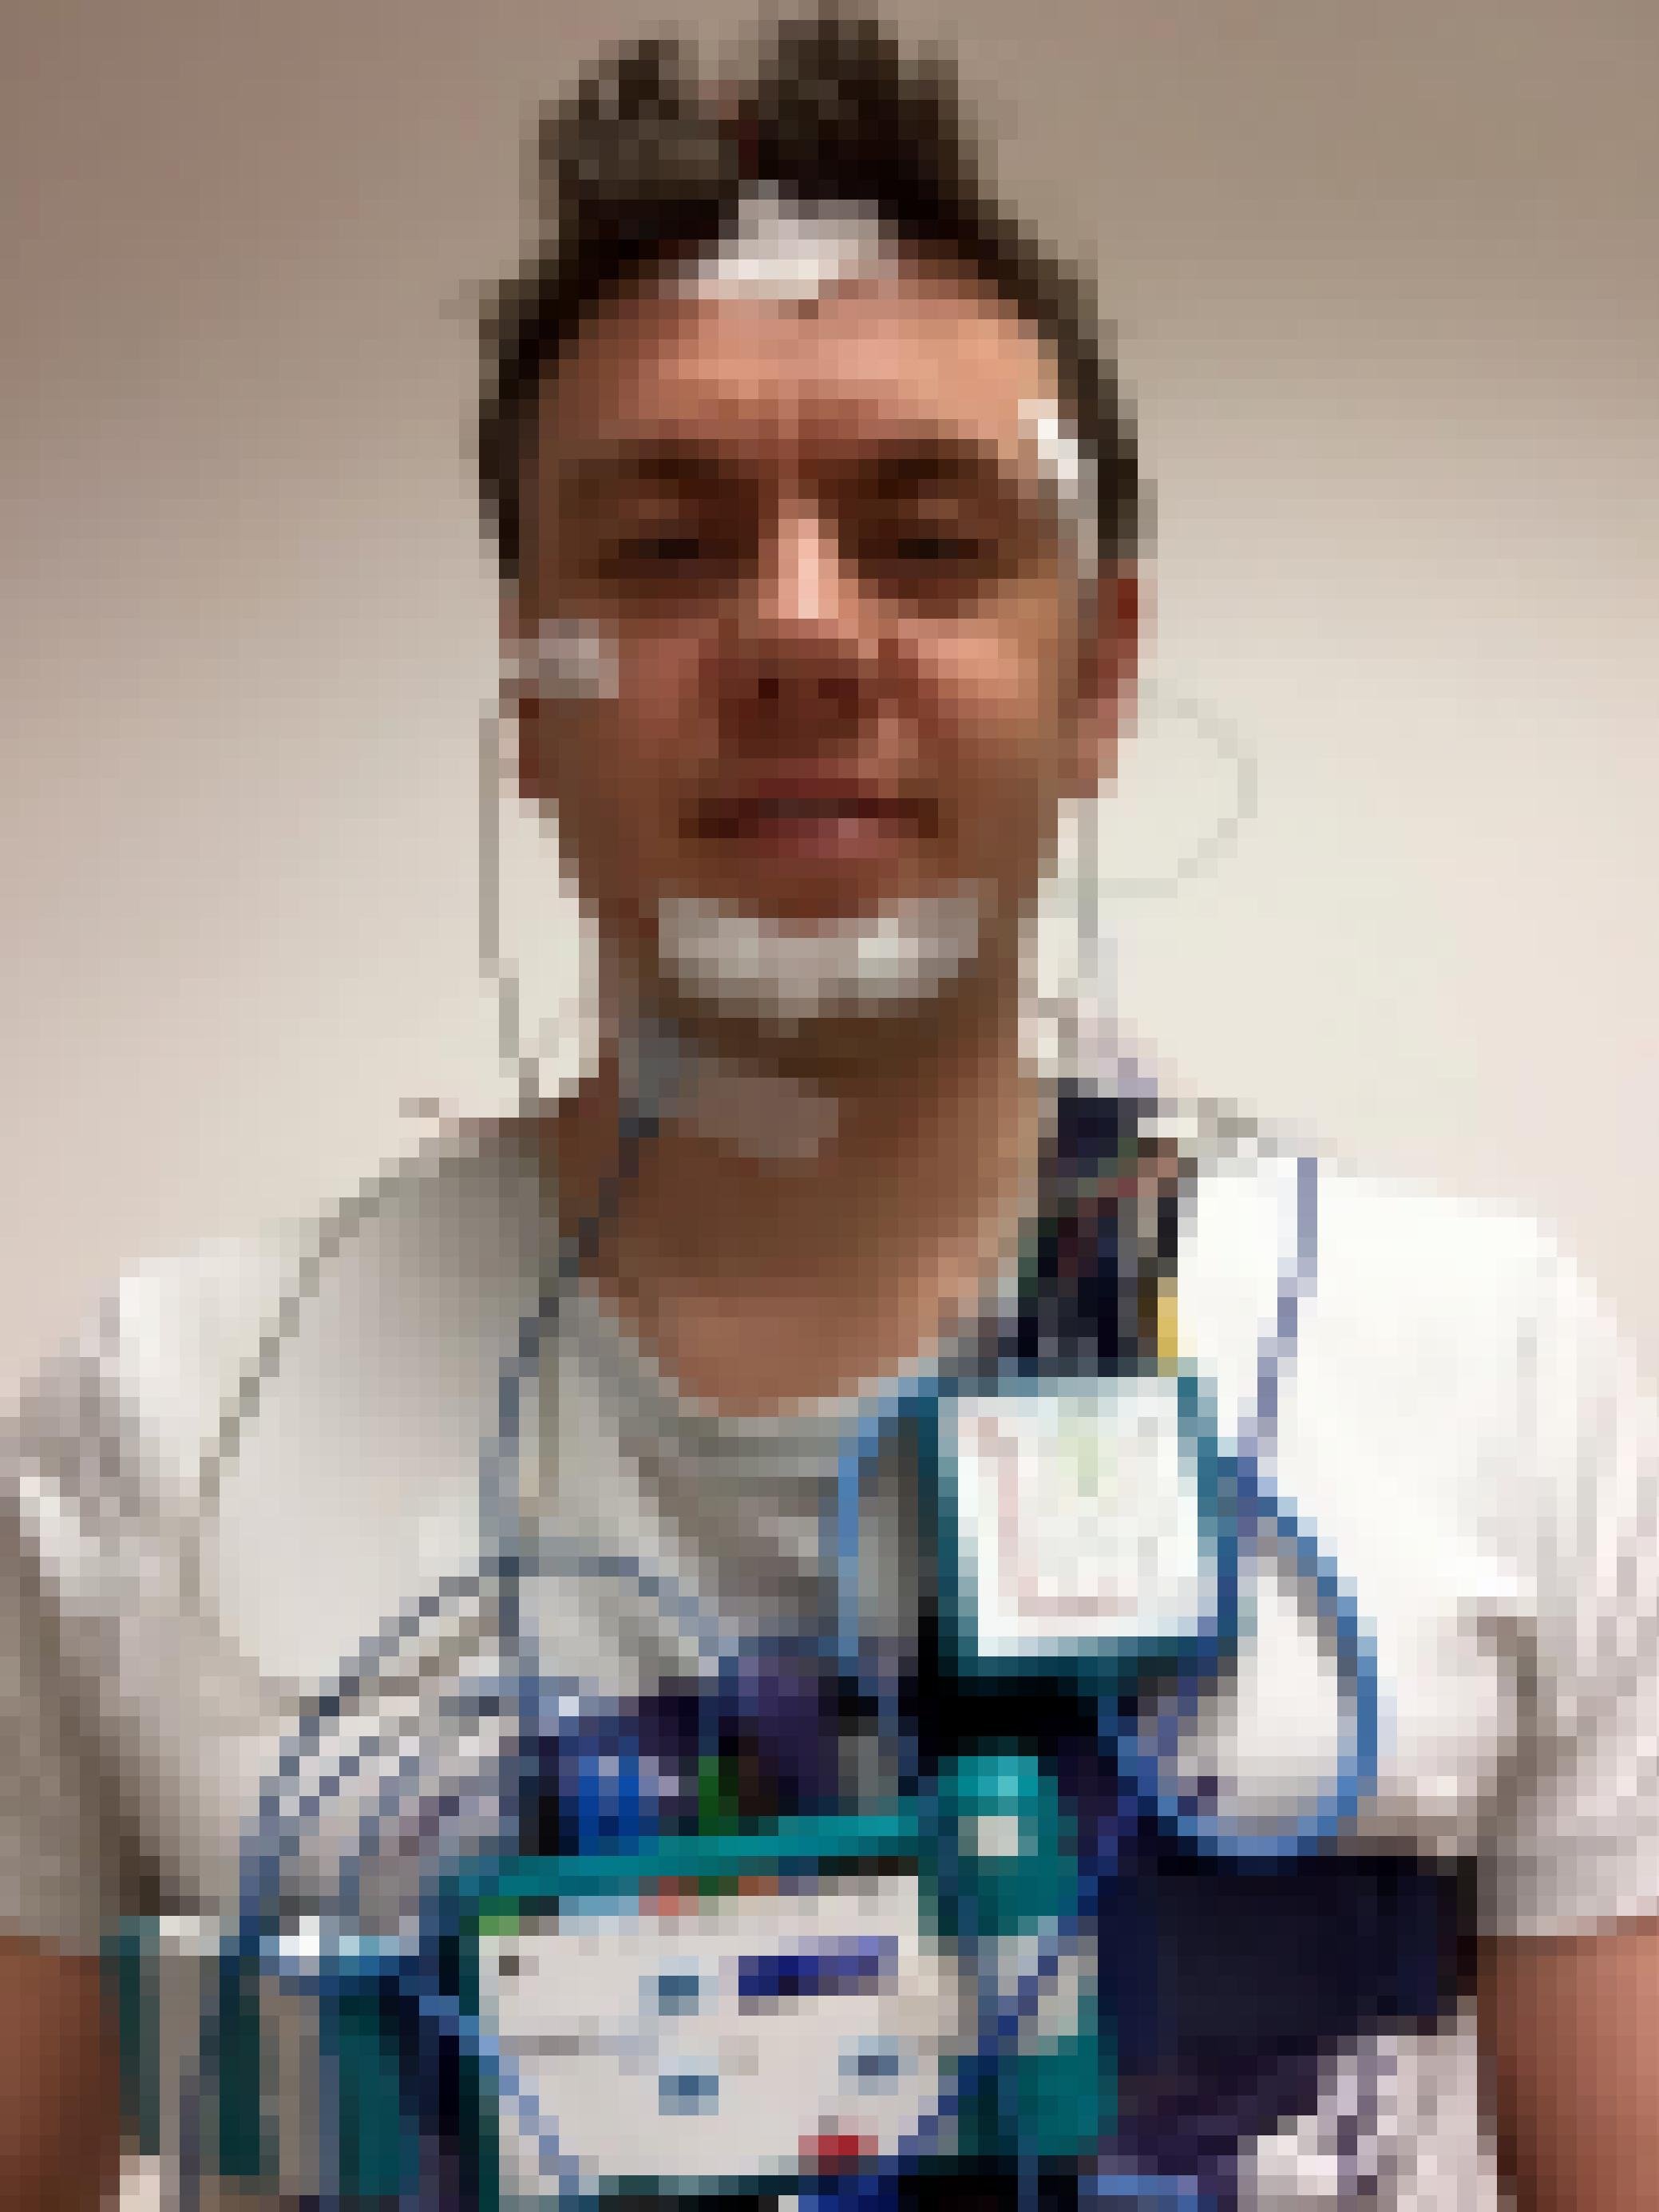 Man sieht einen Mann mit mehreren Sensoren und Kabeln an seinem Gesicht befestigt.